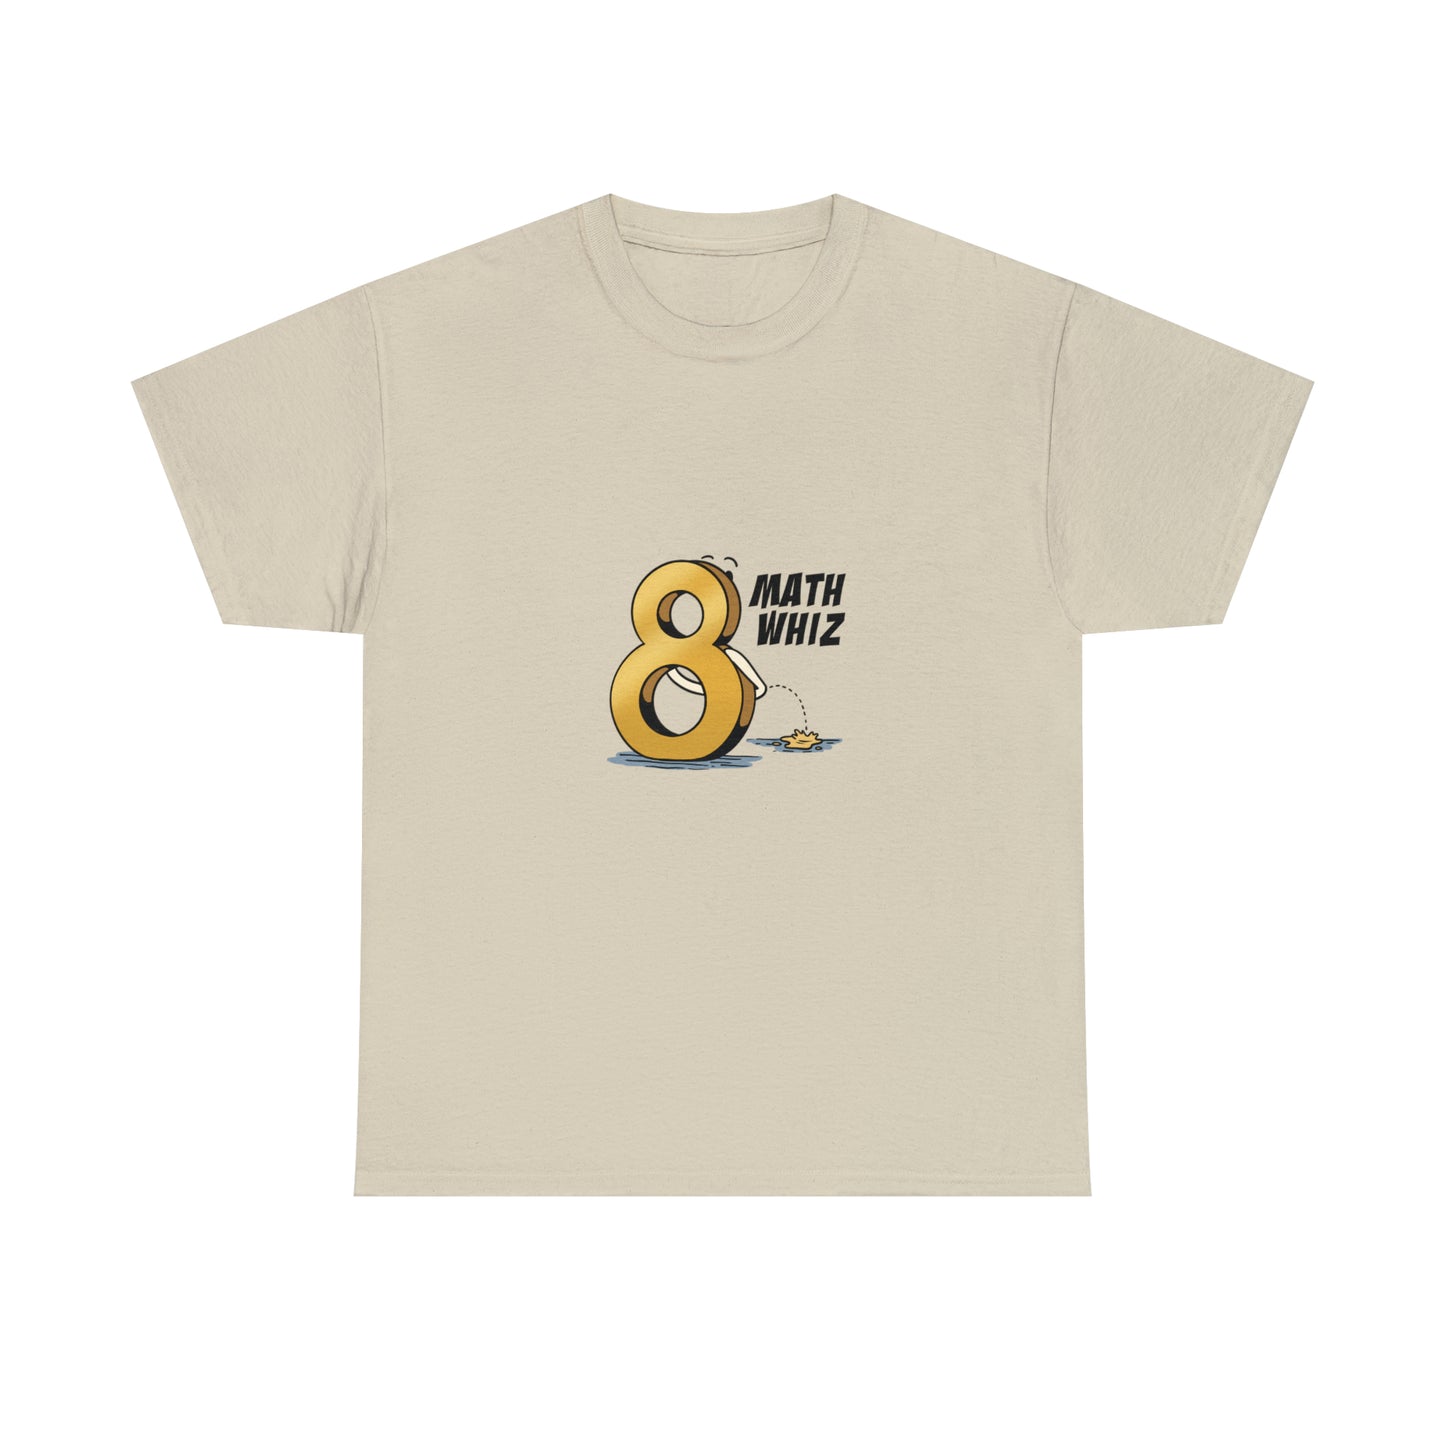 Custom Parody T-shirt, Math Whiz design